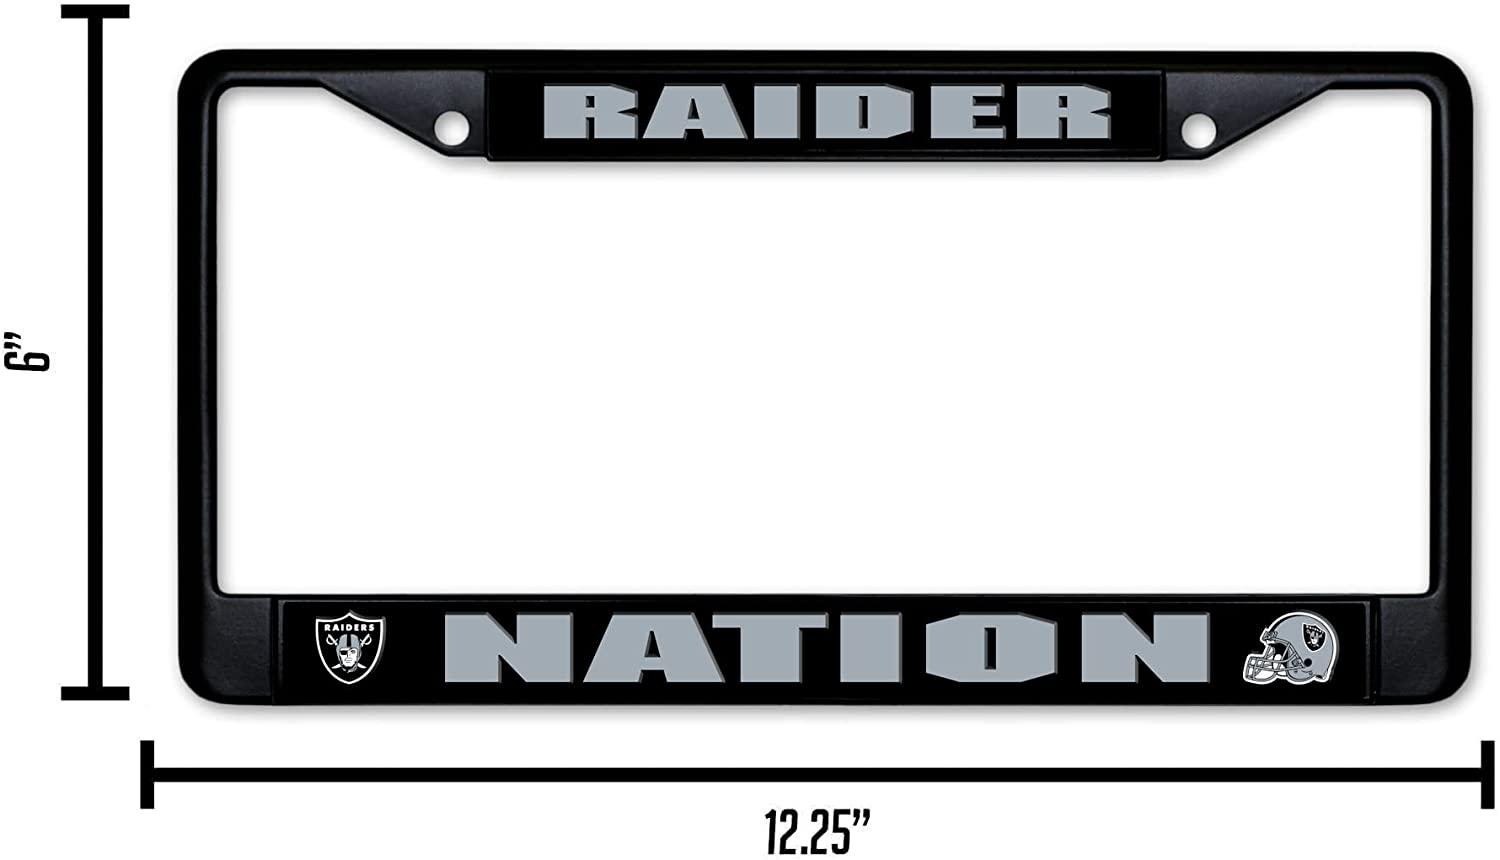 Las Vegas Nevada RAIDERS NFL Football Team Aluminum Vanity License Plate LV